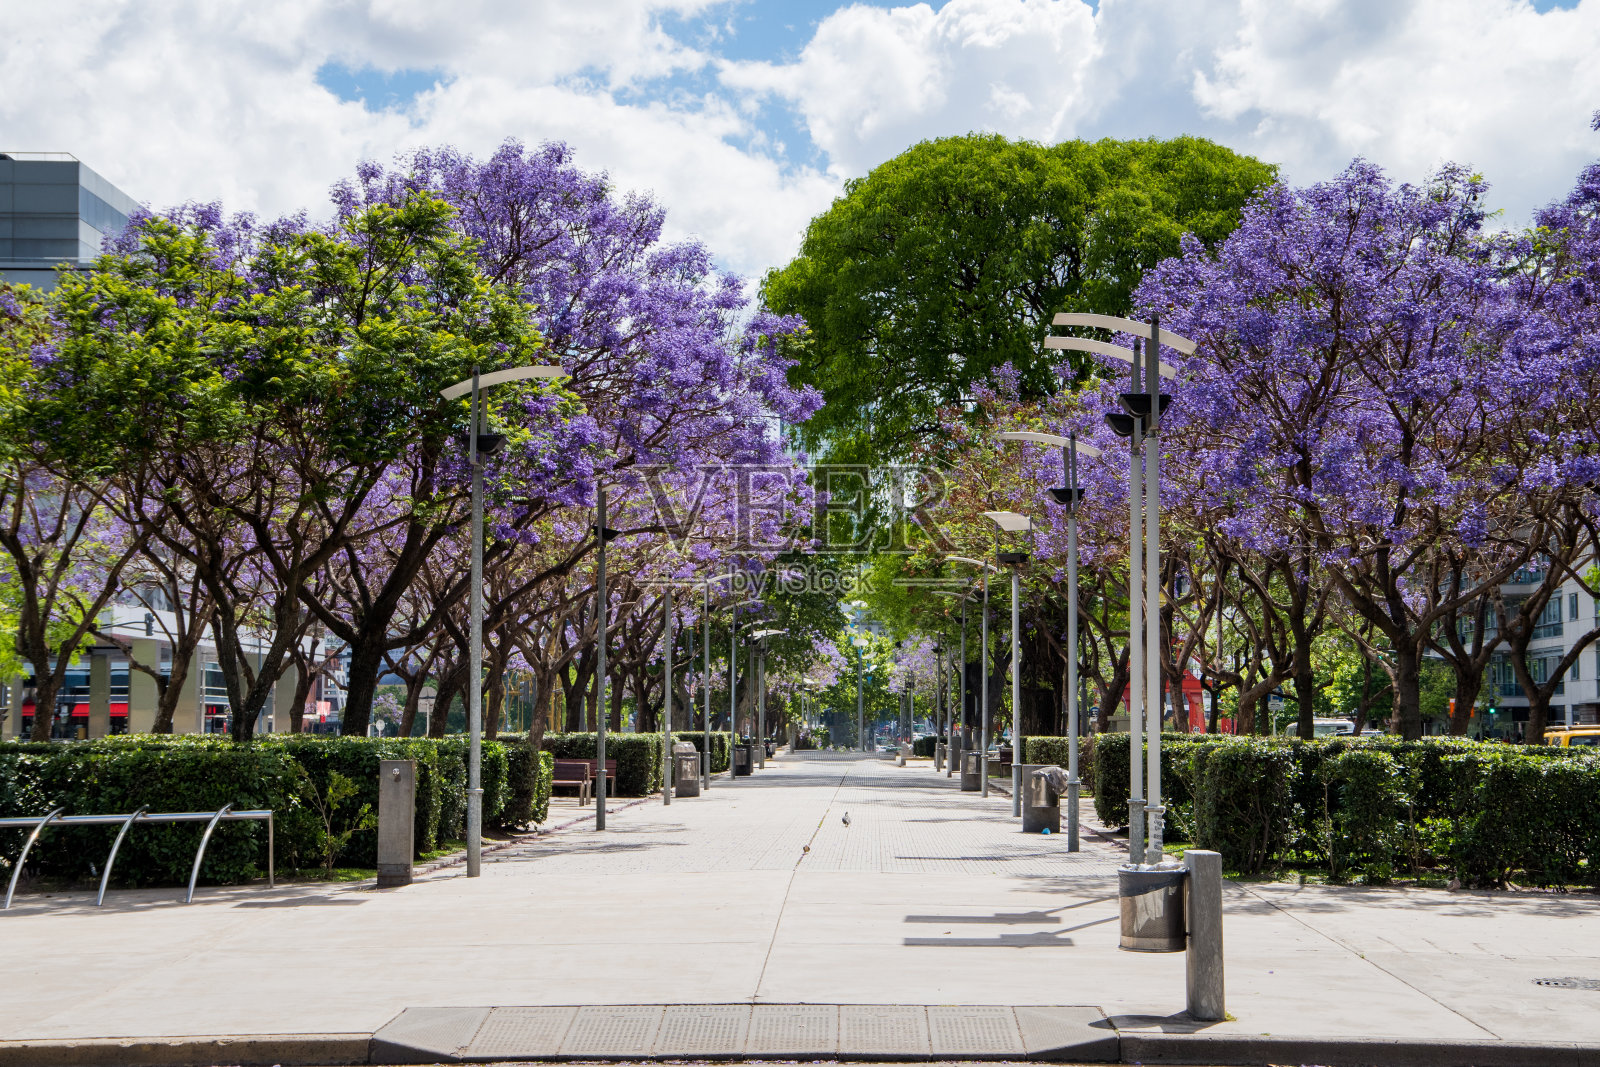 马德罗港的蓝花楹树和紫罗兰照片摄影图片